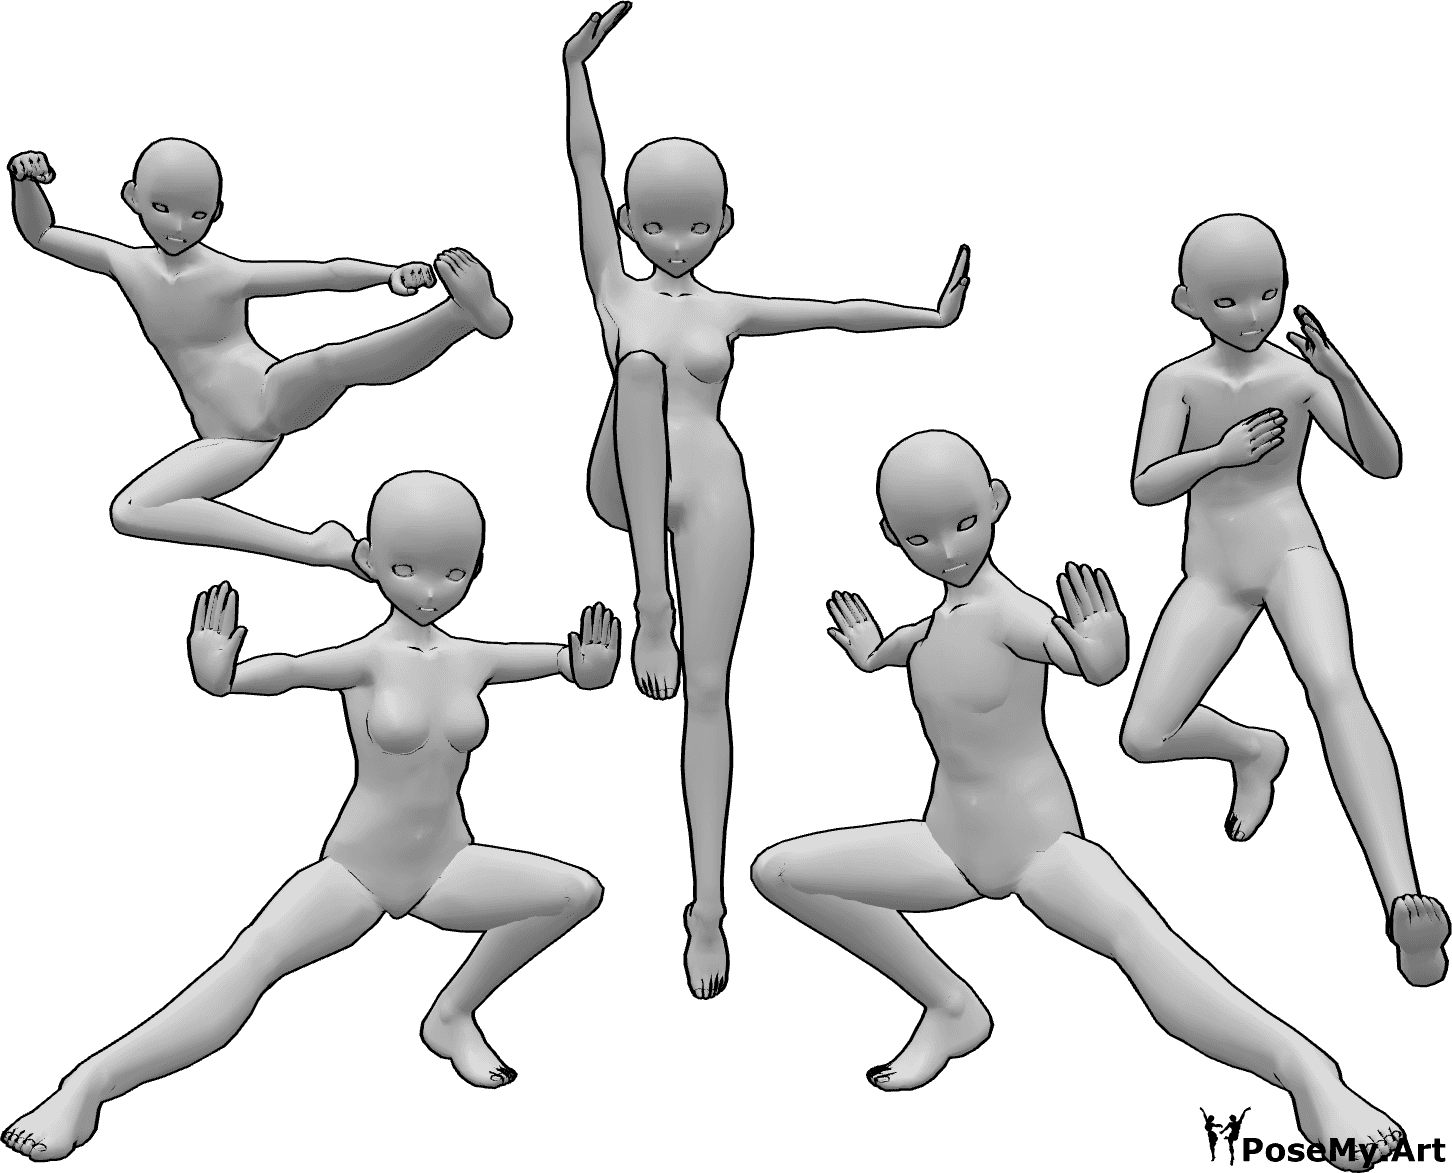 Posen-Referenz- Anime Kung Fu Gruppe Pose - Gruppe von fünf weiblichen und männlichen Kung-Fu-Kämpfern aus dem Anime posieren, Kung-Fu-Kämpfer aus dem Anime posieren